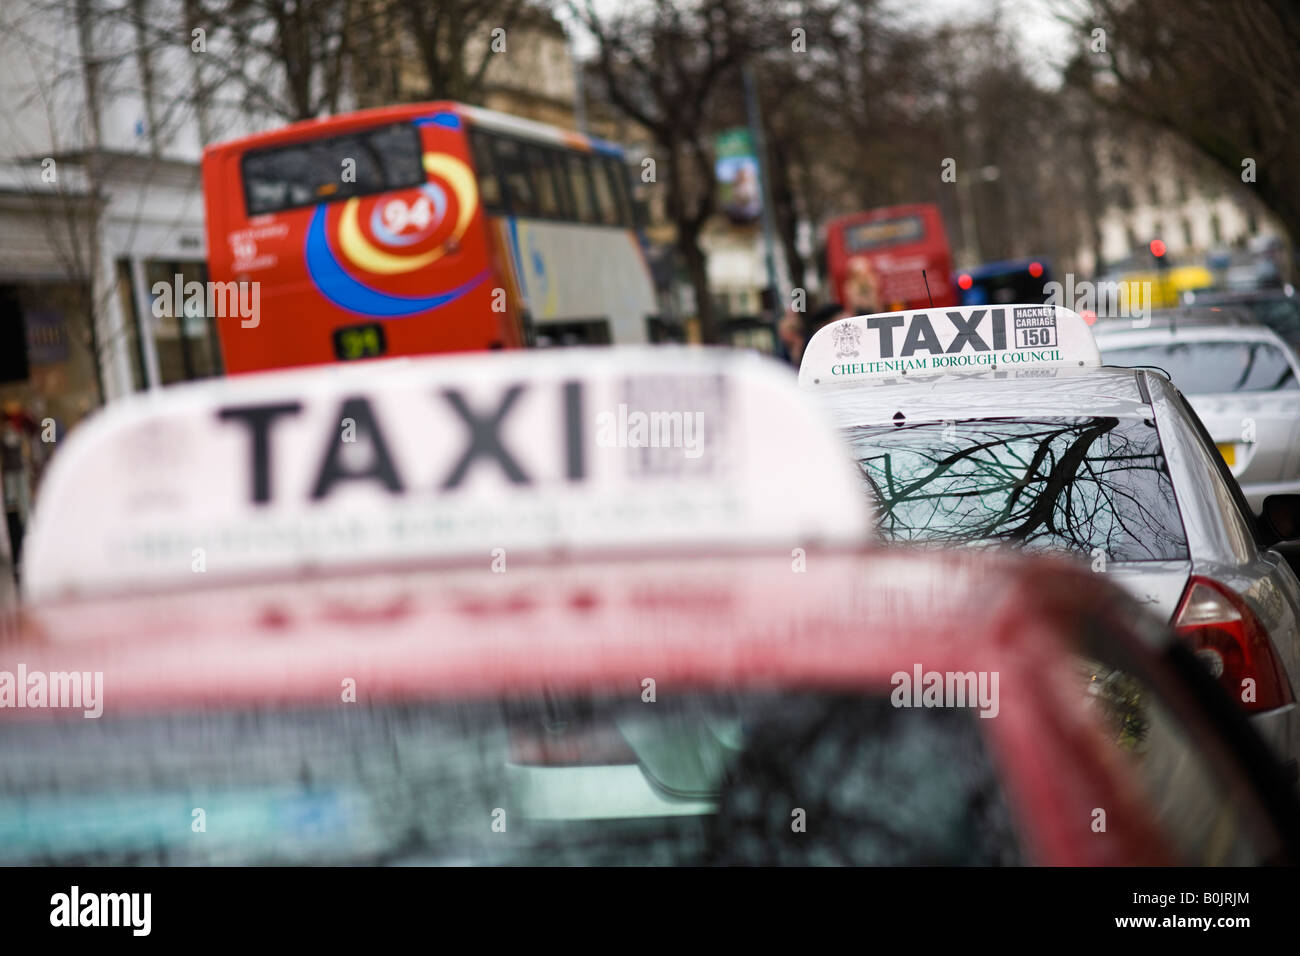 Taxi rank in un centro storico, Cheltenham, Regno Unito Foto Stock